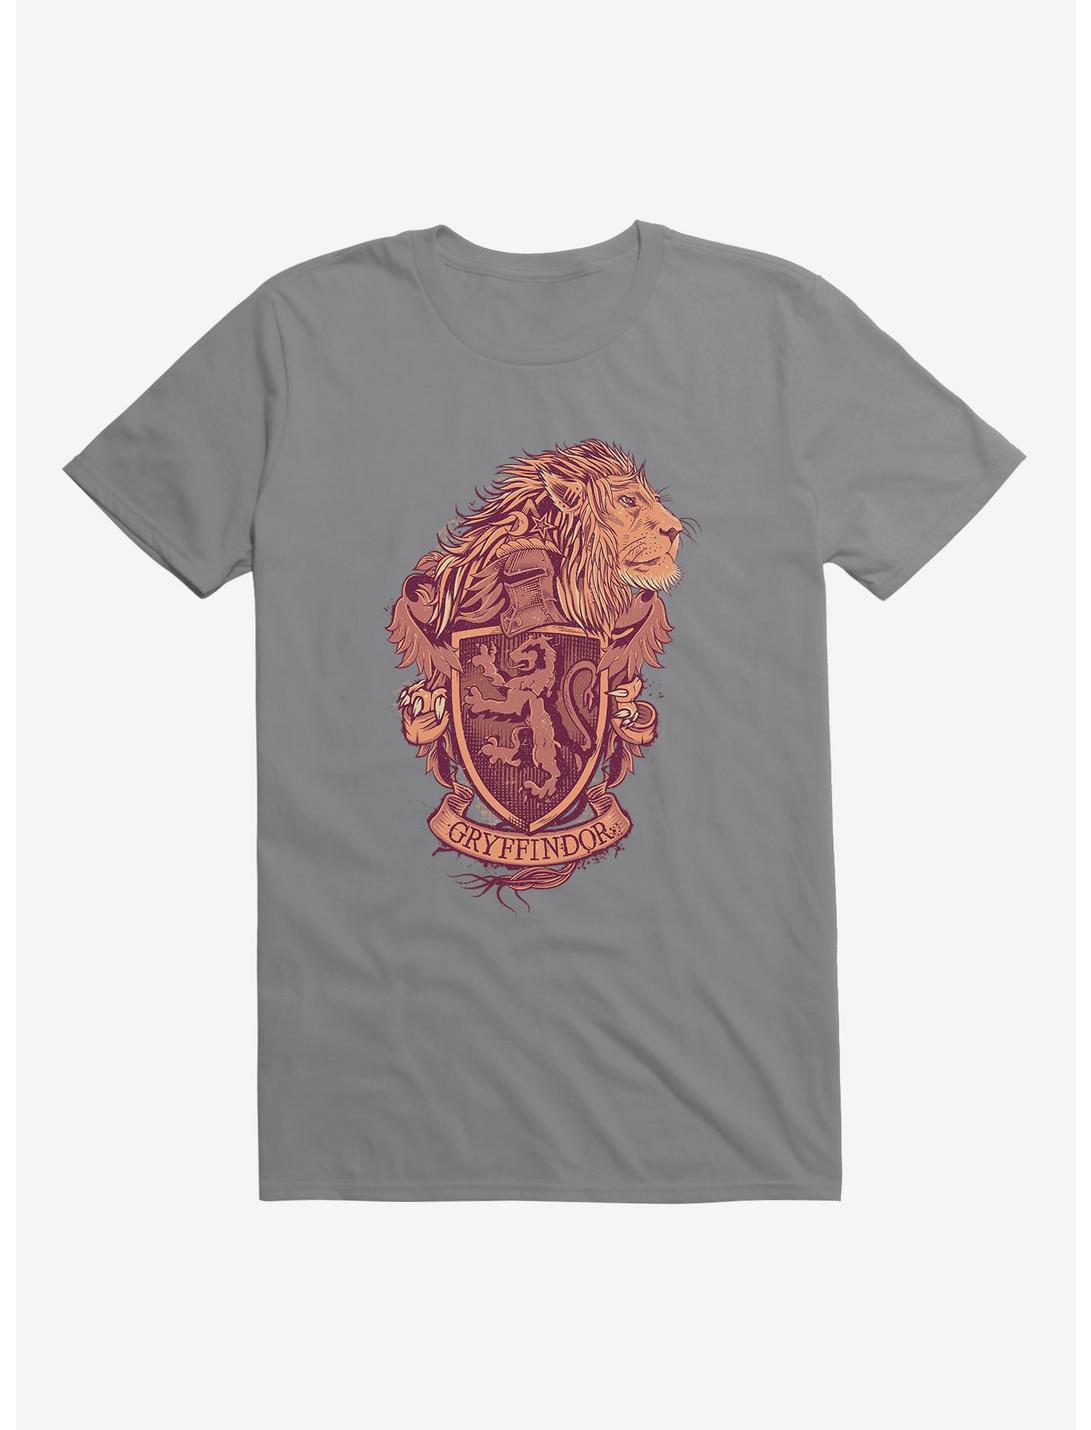 Harry Potter Gryffindor Crest T-Shirt, , hi-res